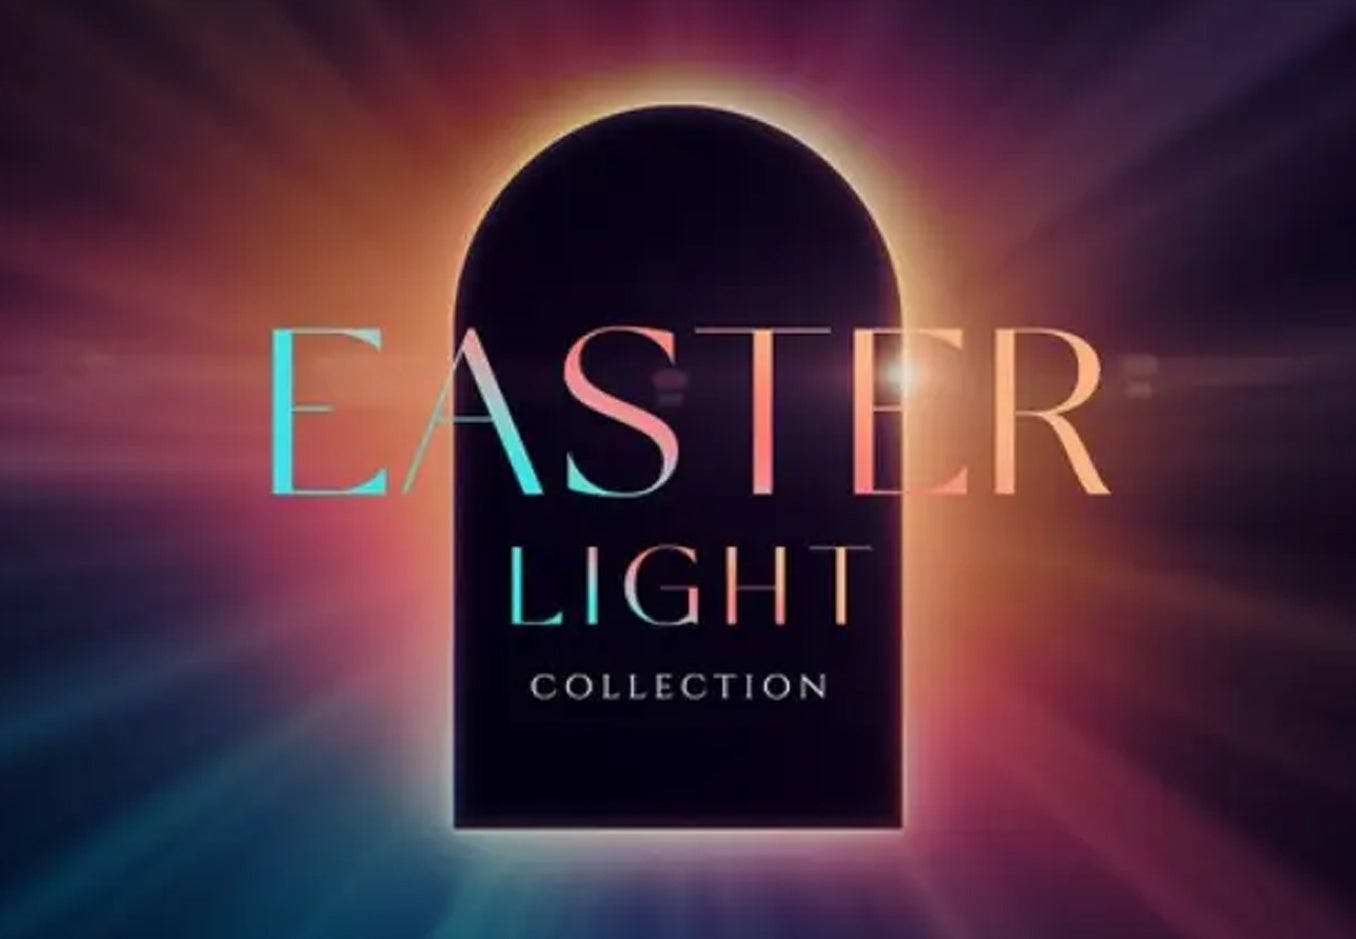 Easter Light